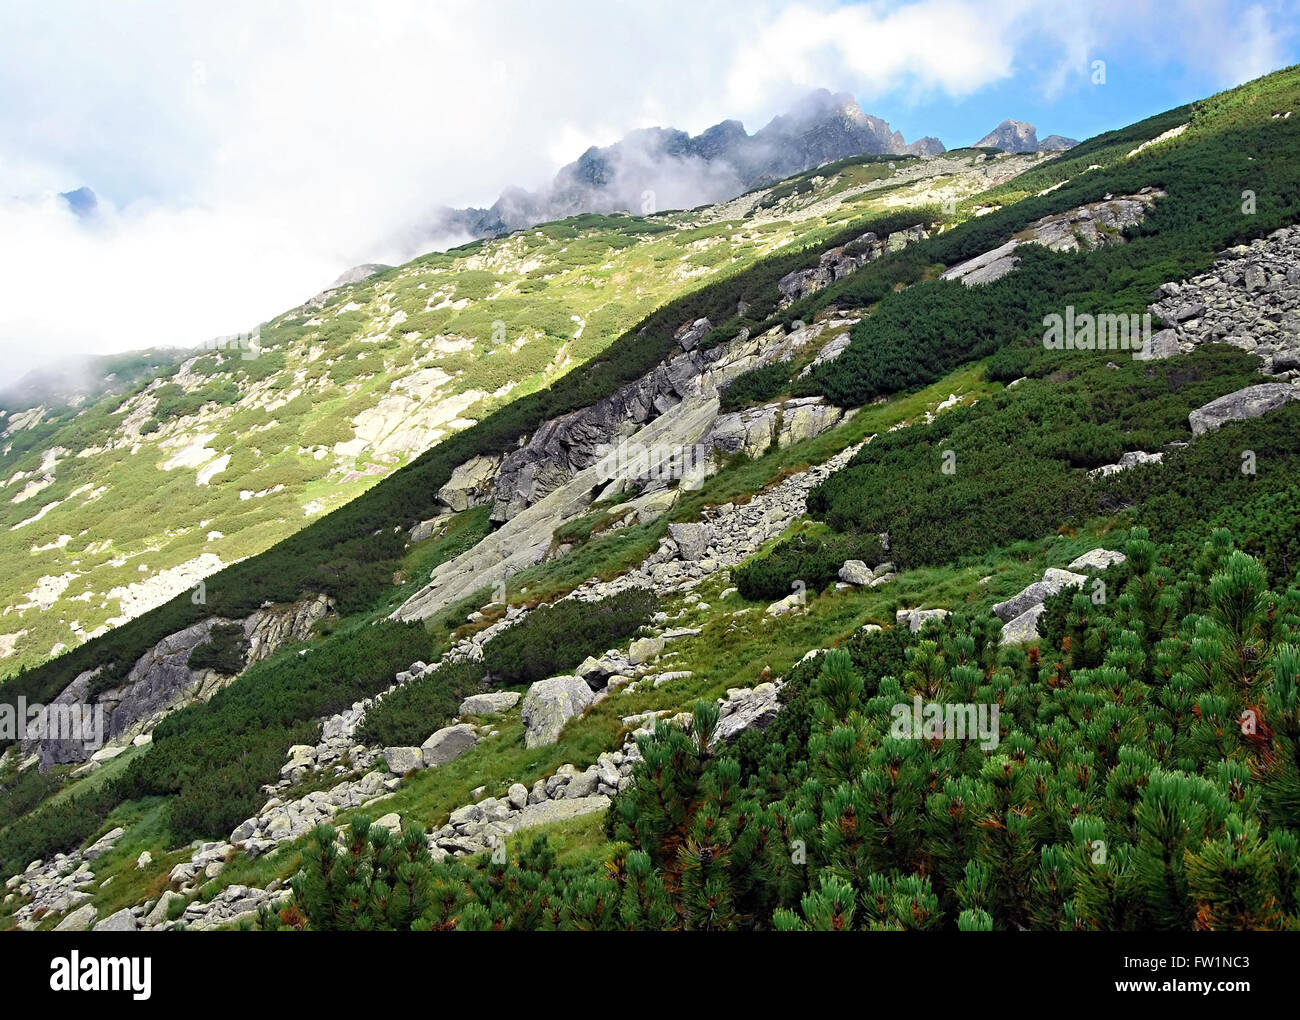 Zlomiskova dolina valle con picos en el fondo en altas montañas Tatras Foto de stock